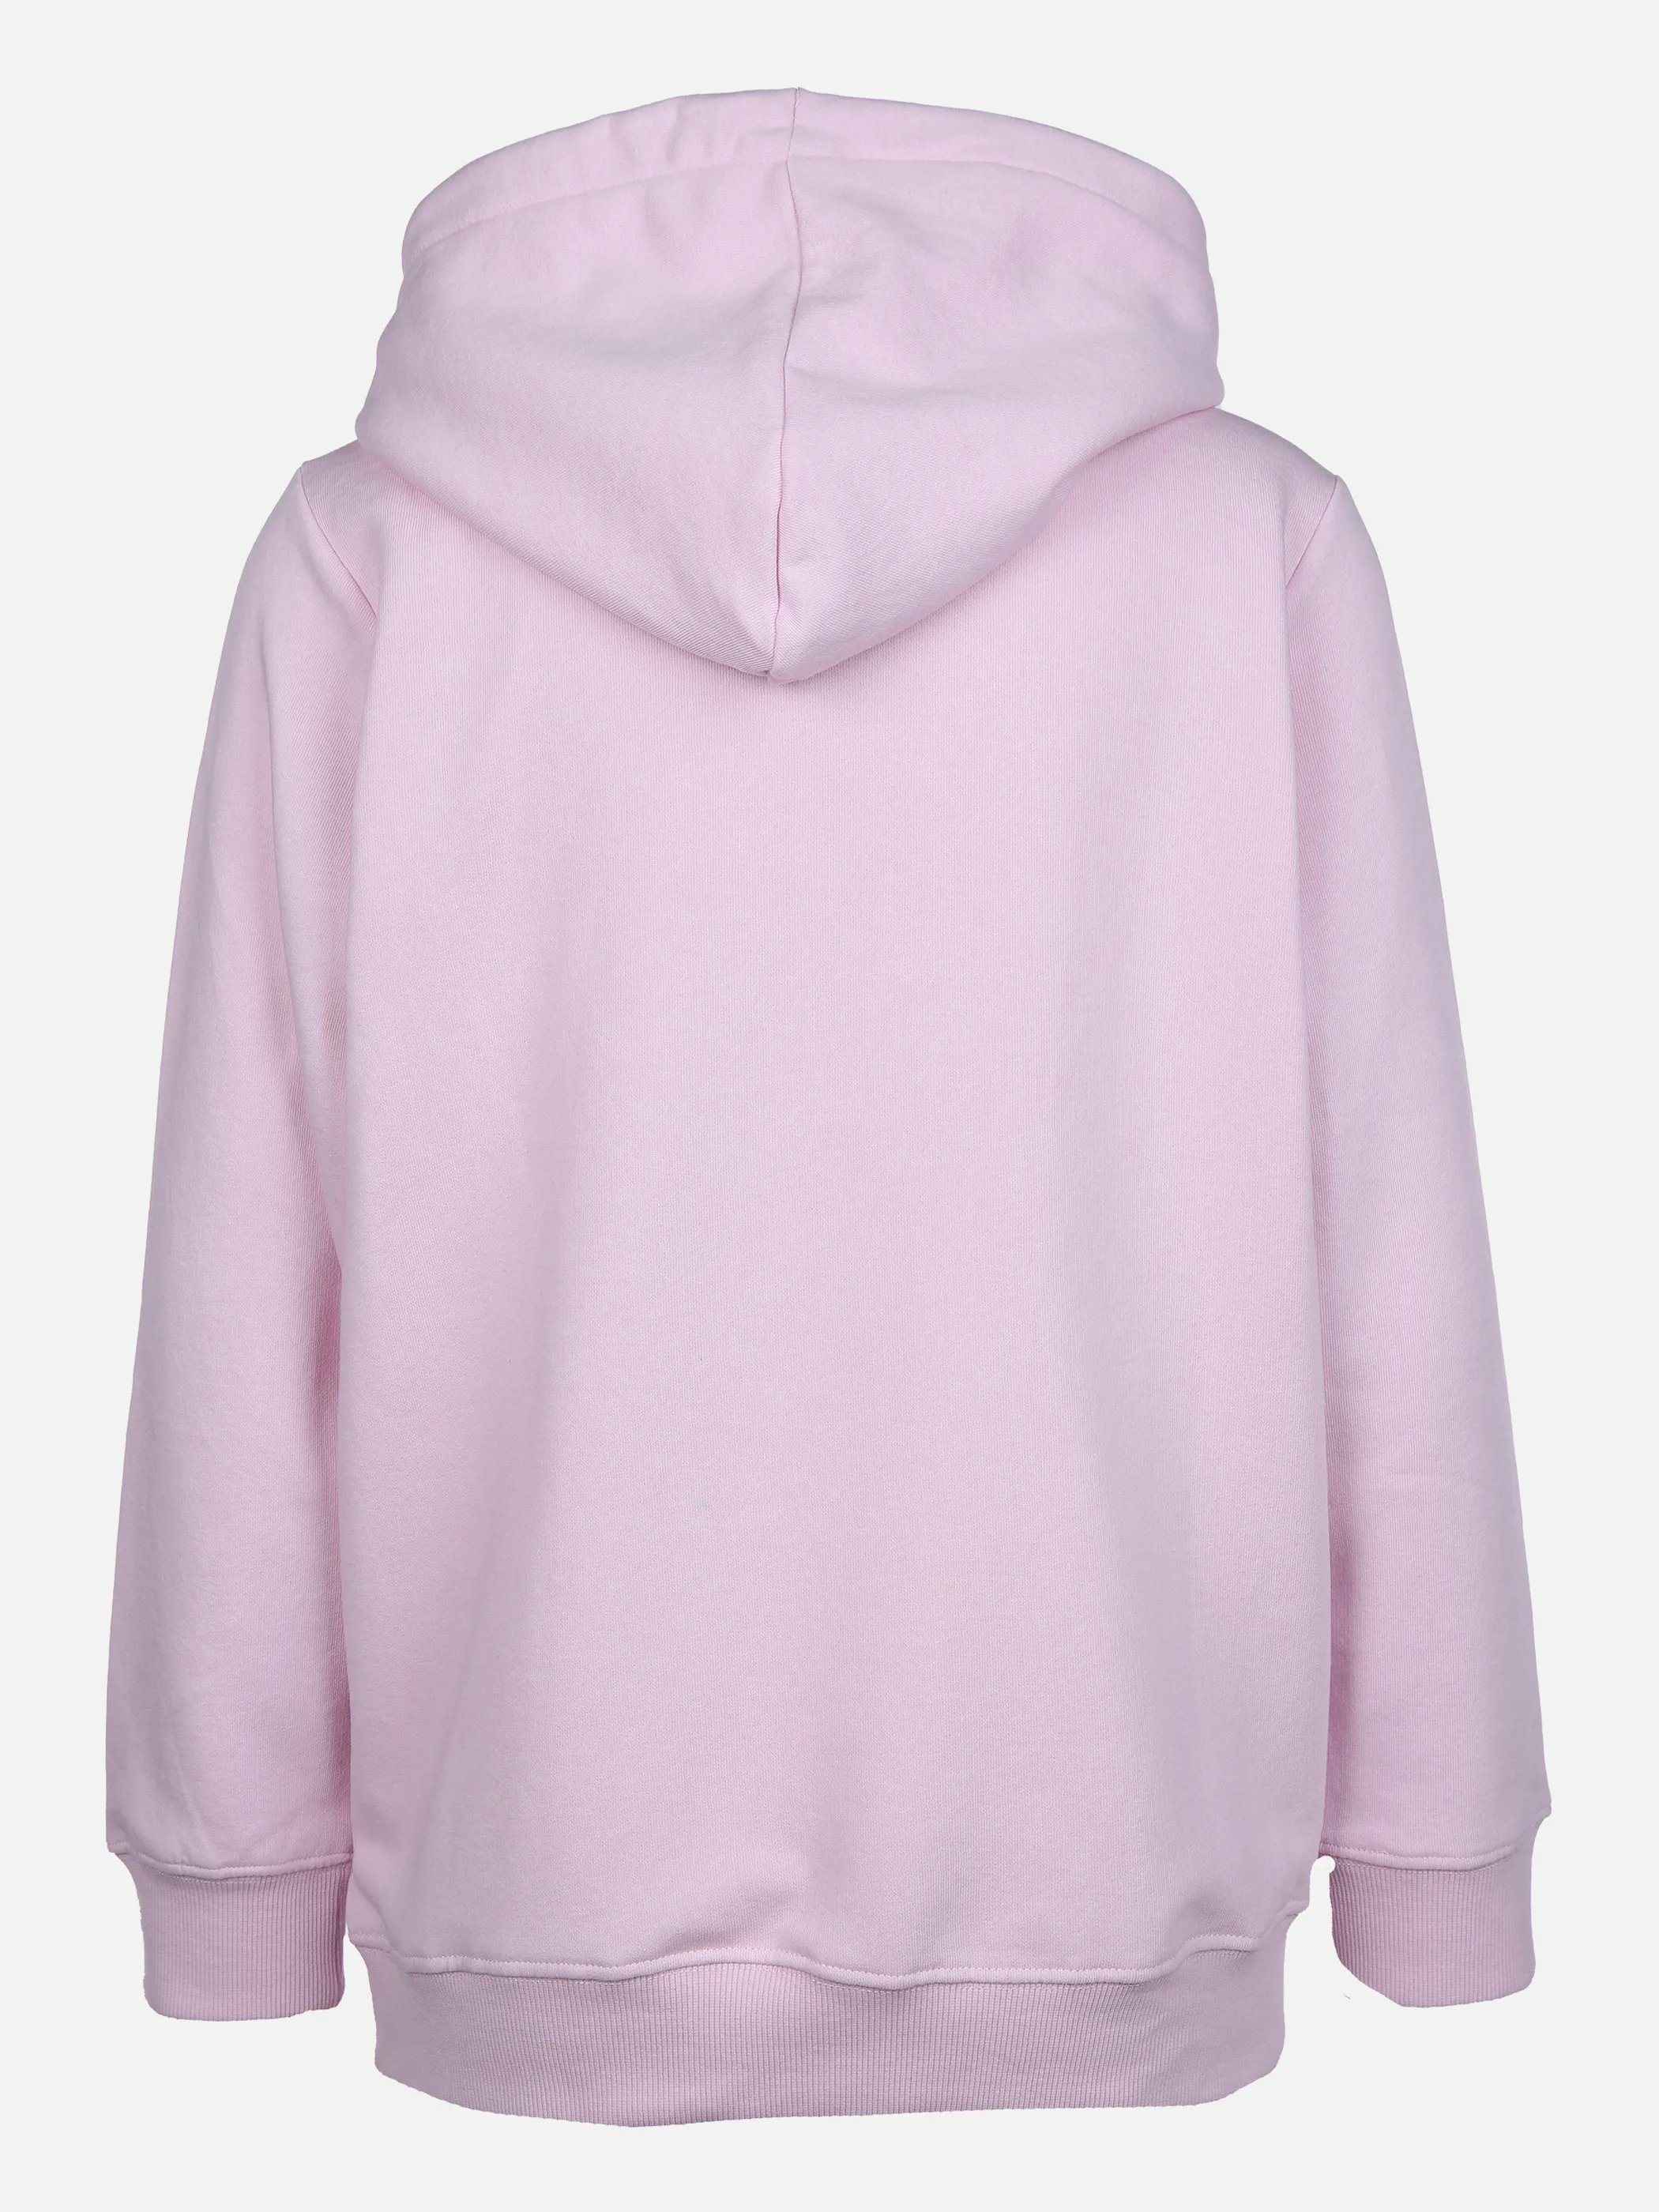 Sure Da-Sweatshirt mit Kapuze Pink 861307 PINK 2